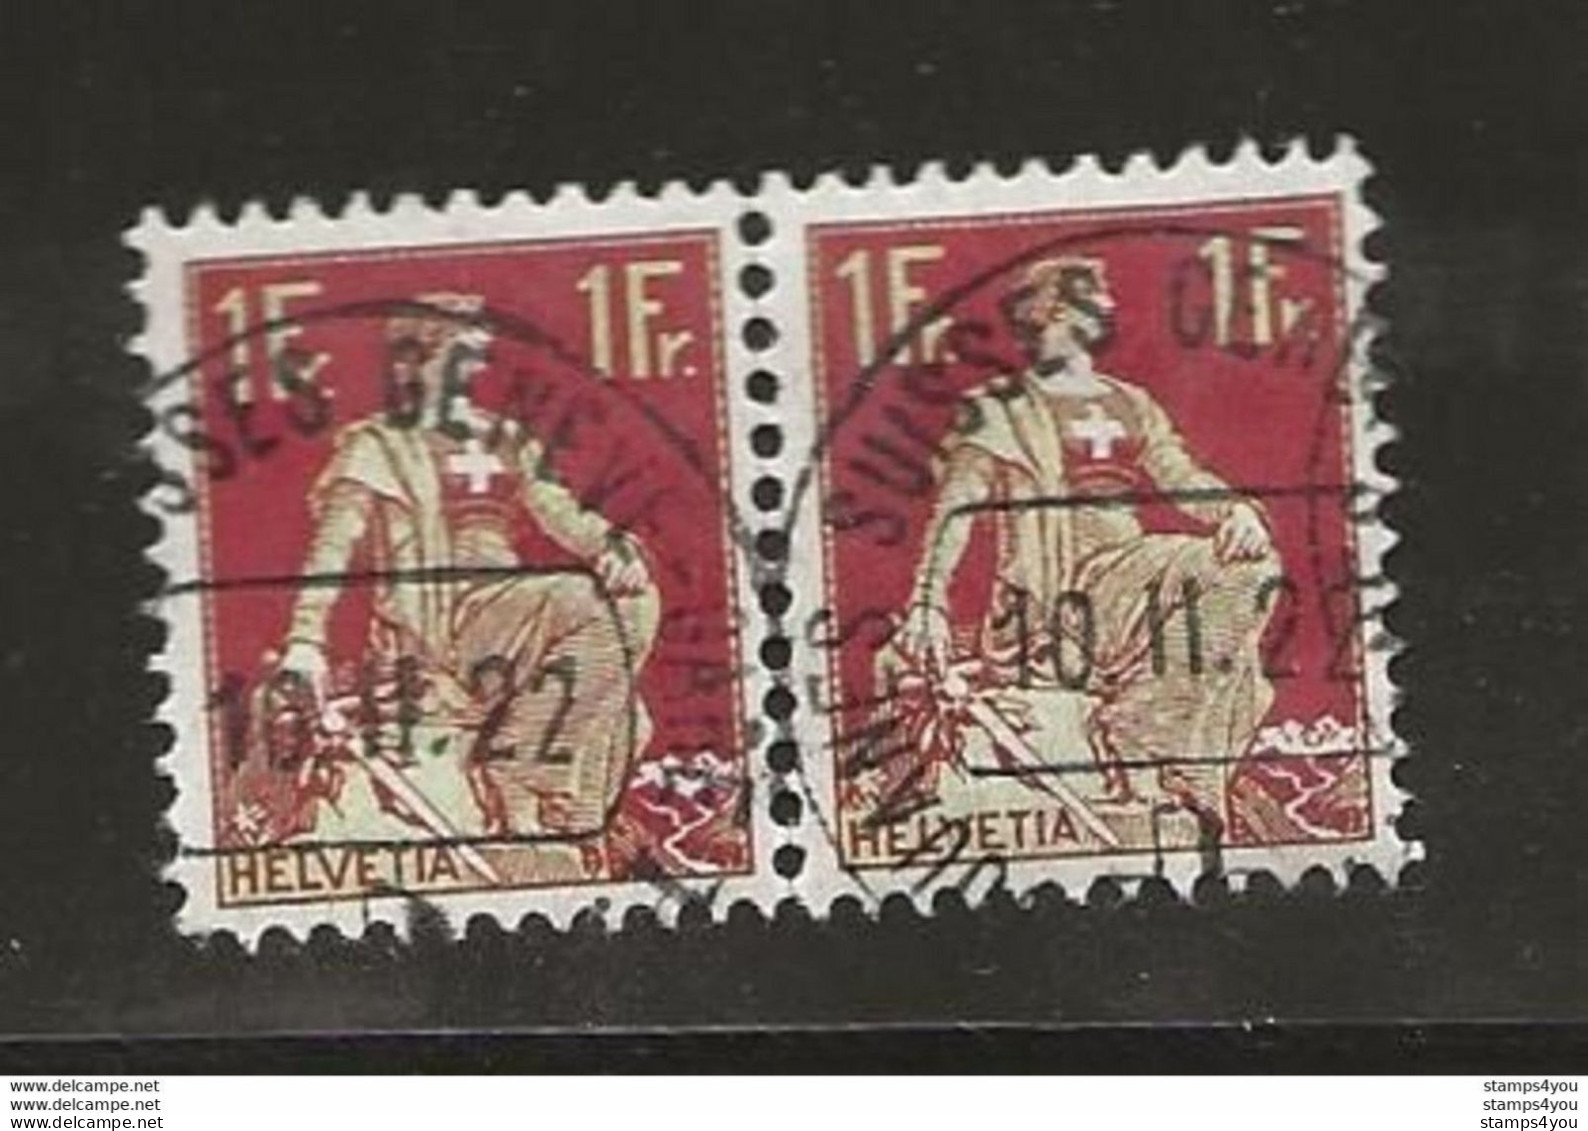 400 - Timbres Avec Cachet Douane Suisse Genève 1922 - Poststempel